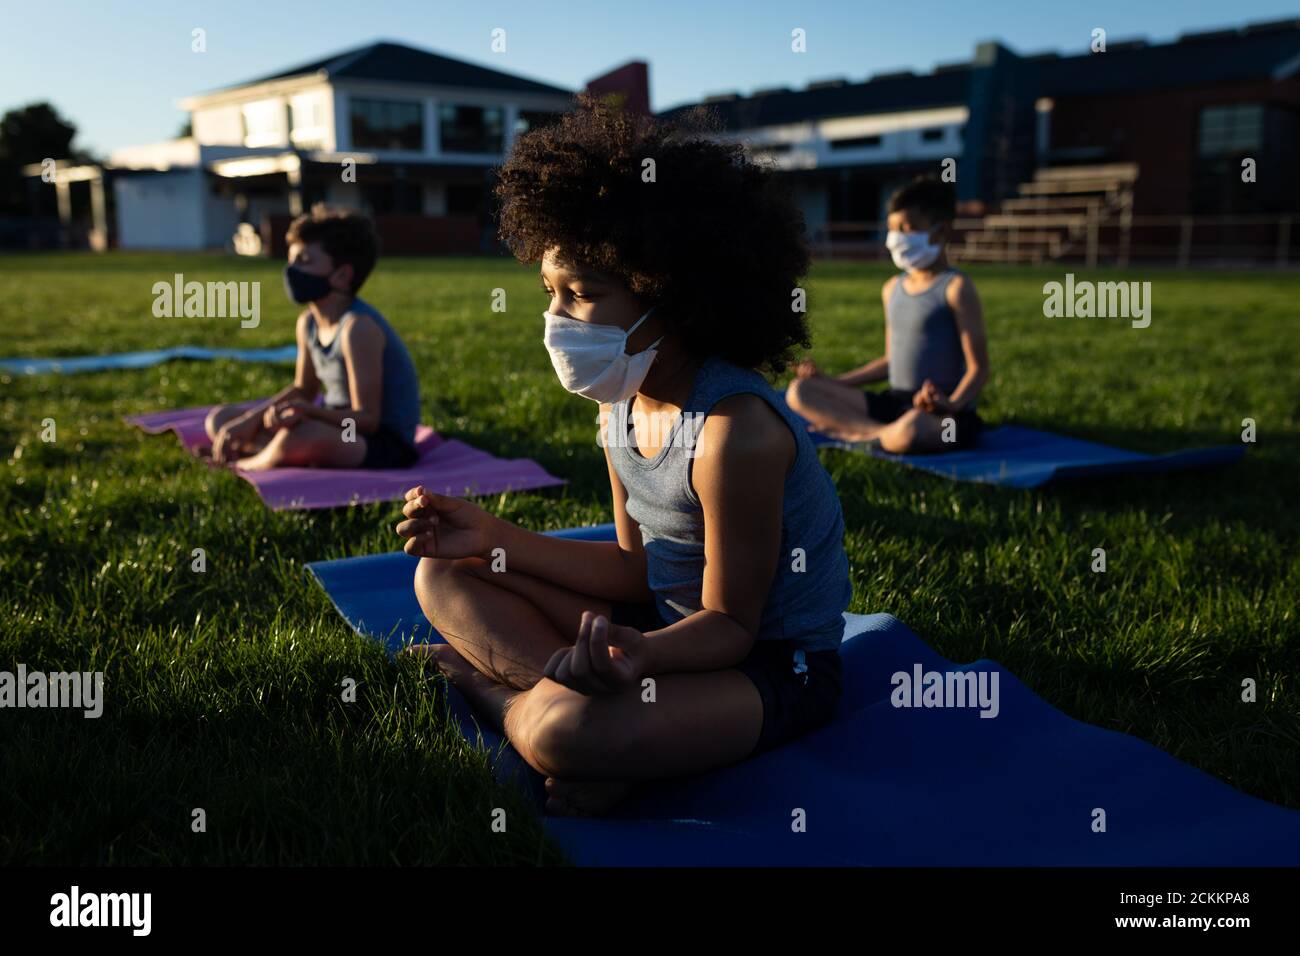 Groupe d'enfants portant des masques de yoga dans le jardin Banque D'Images